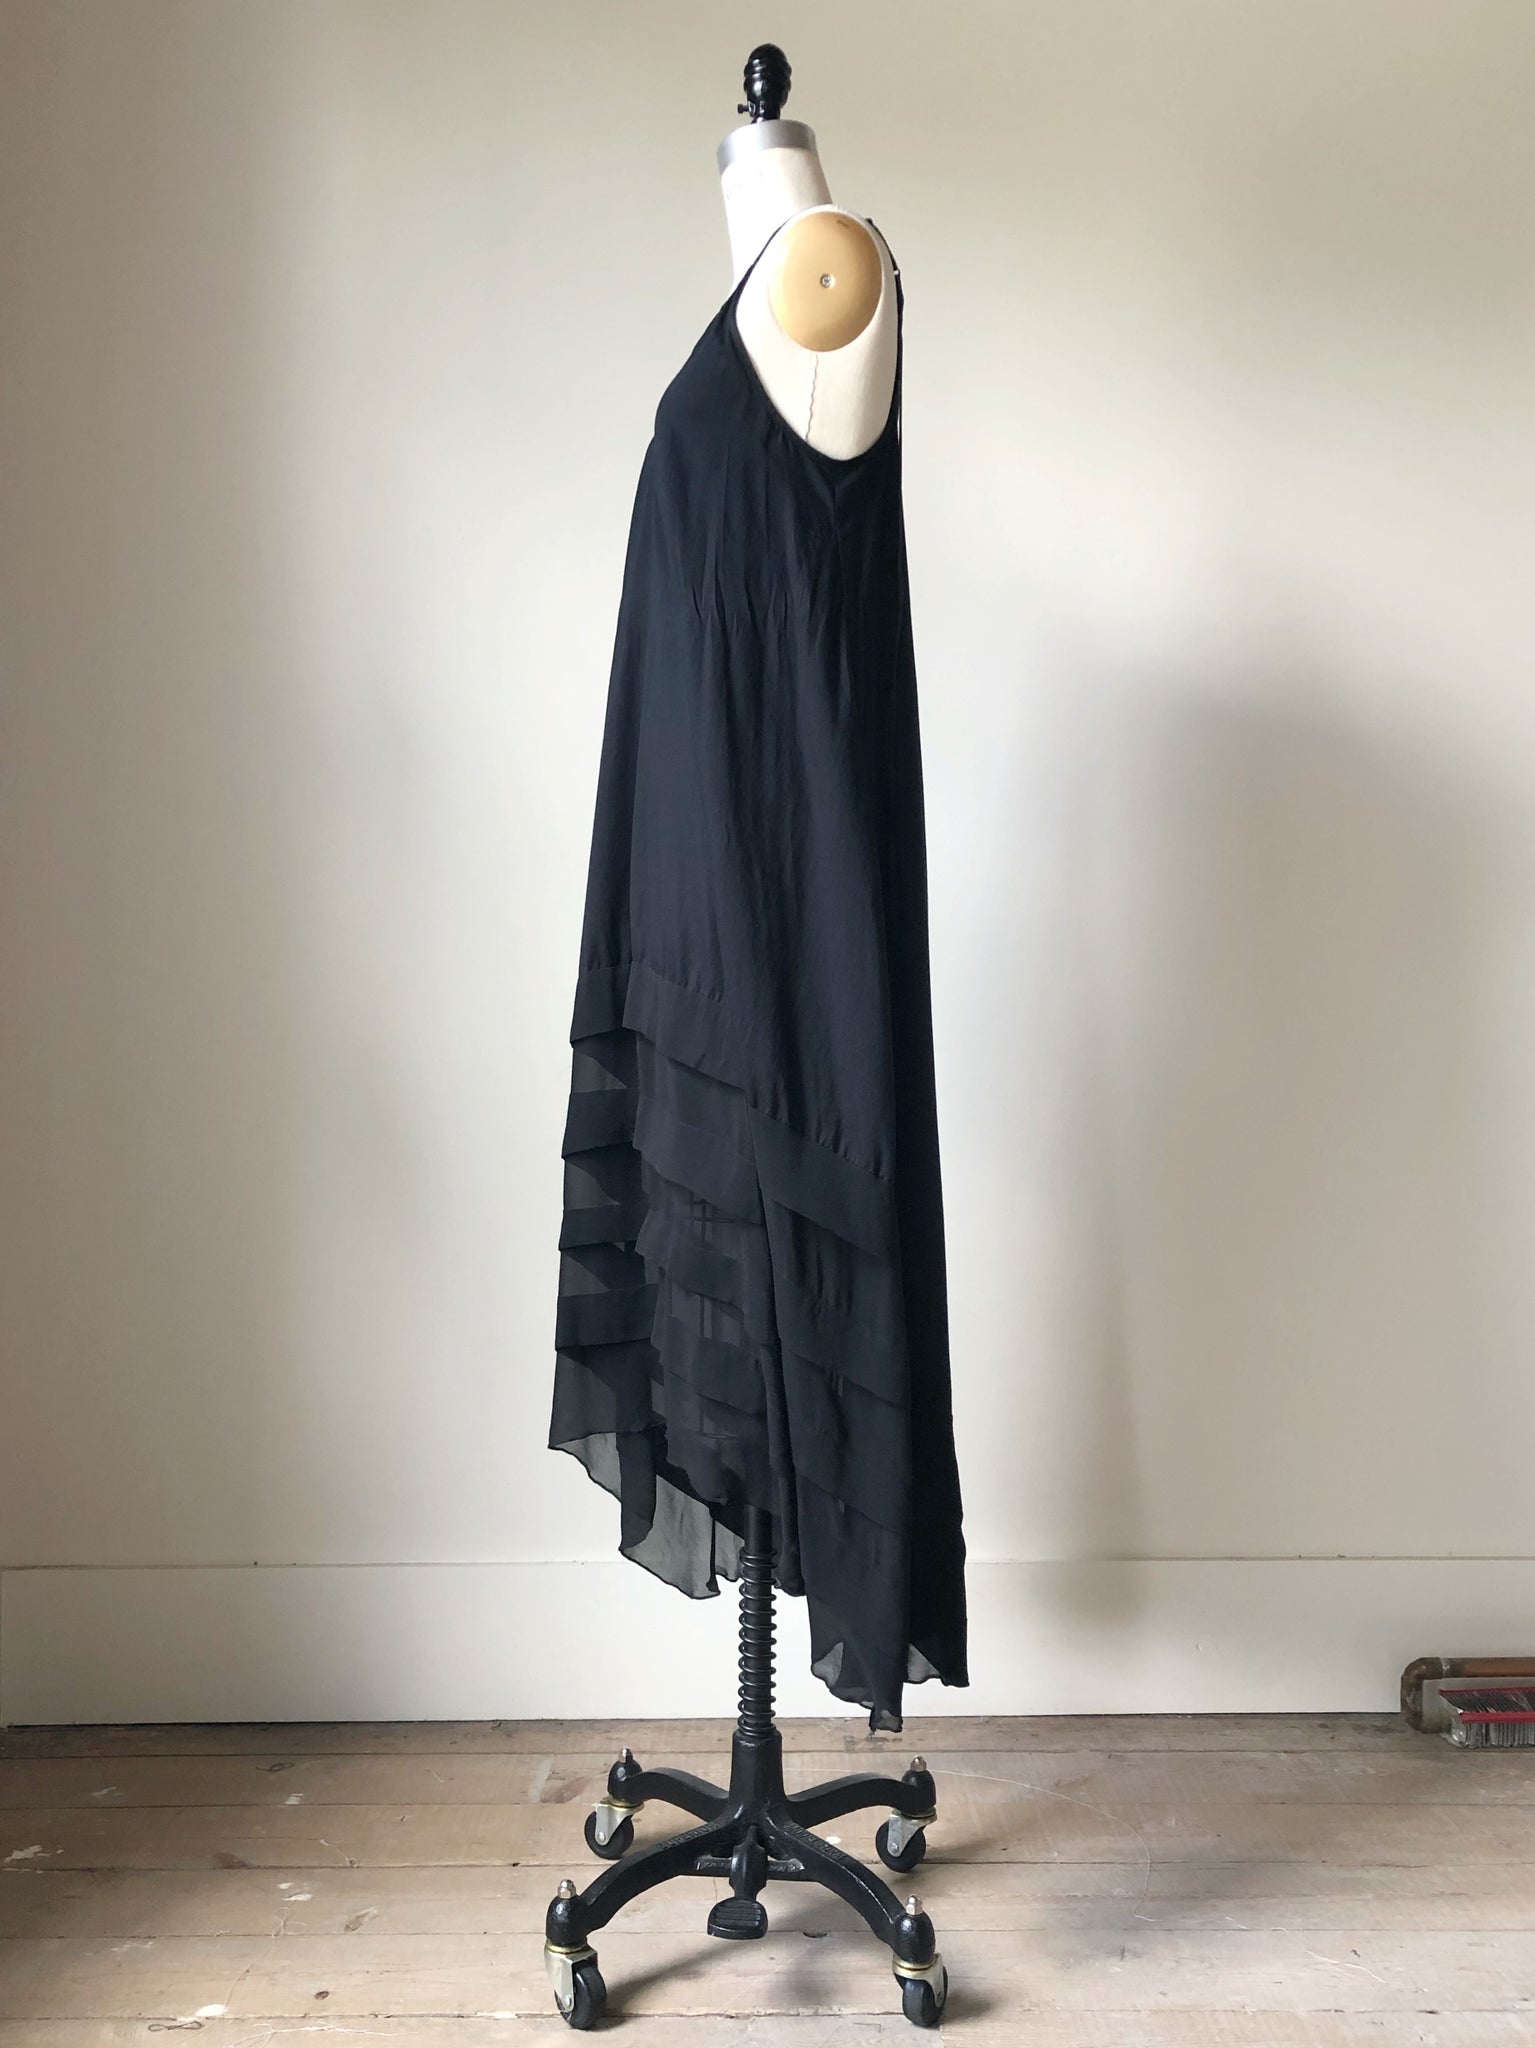 cotton and silk chiffon pin tuck slip dress